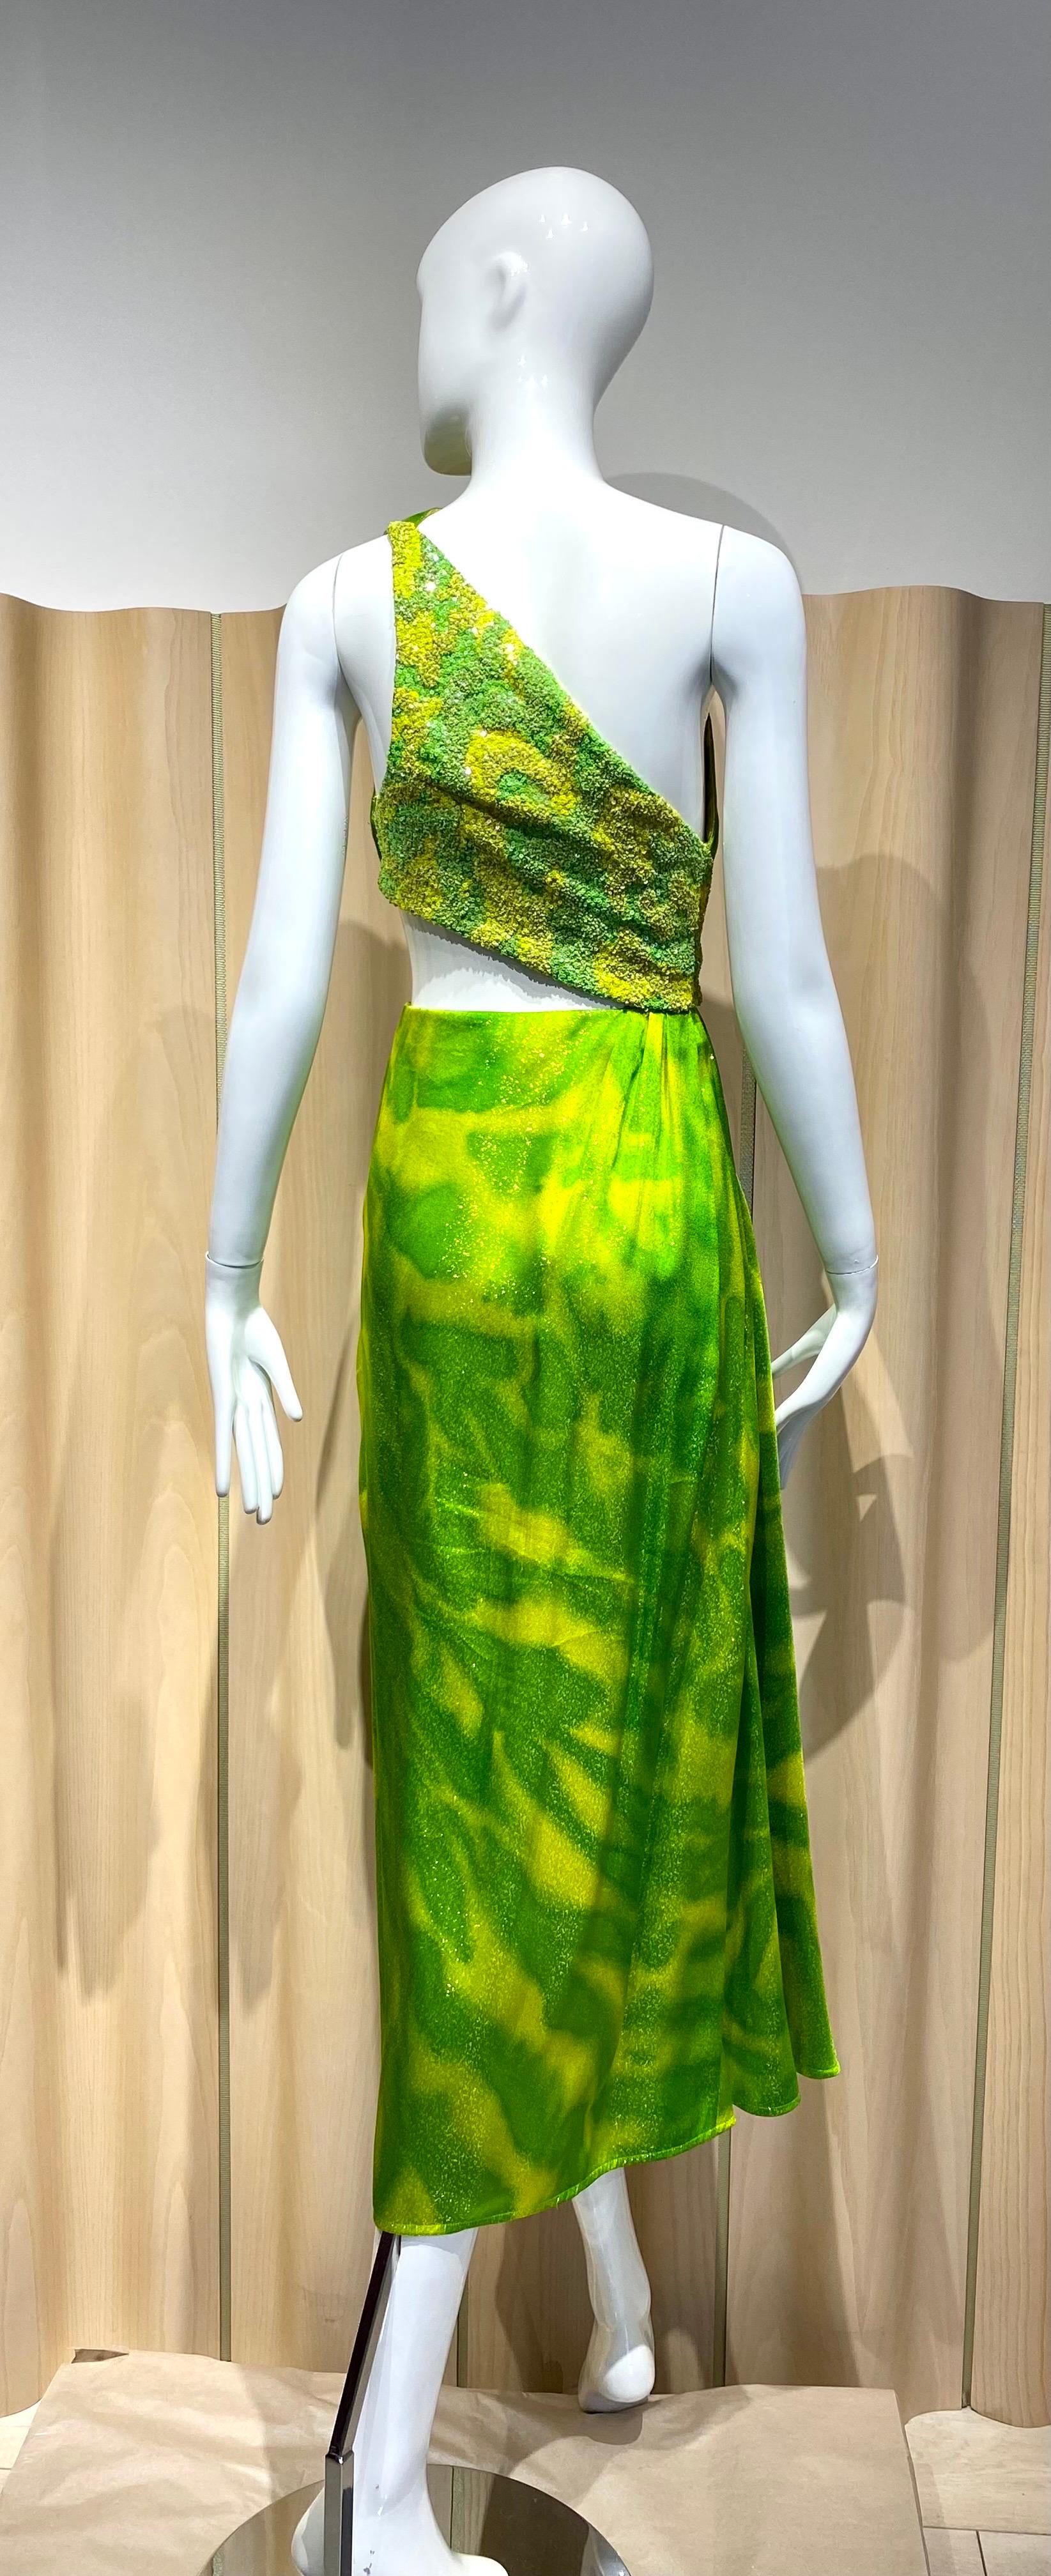 1992 Geoffrey Beene Lime green chartreuse print Grecian cut out gown mit mehrfarbigen Pailletten.
siehe beigefügtes Foto der Startbahn.
Markierte Größe 4, aber es passen Größe modern Größe 2 
Maße: Büste 32,5